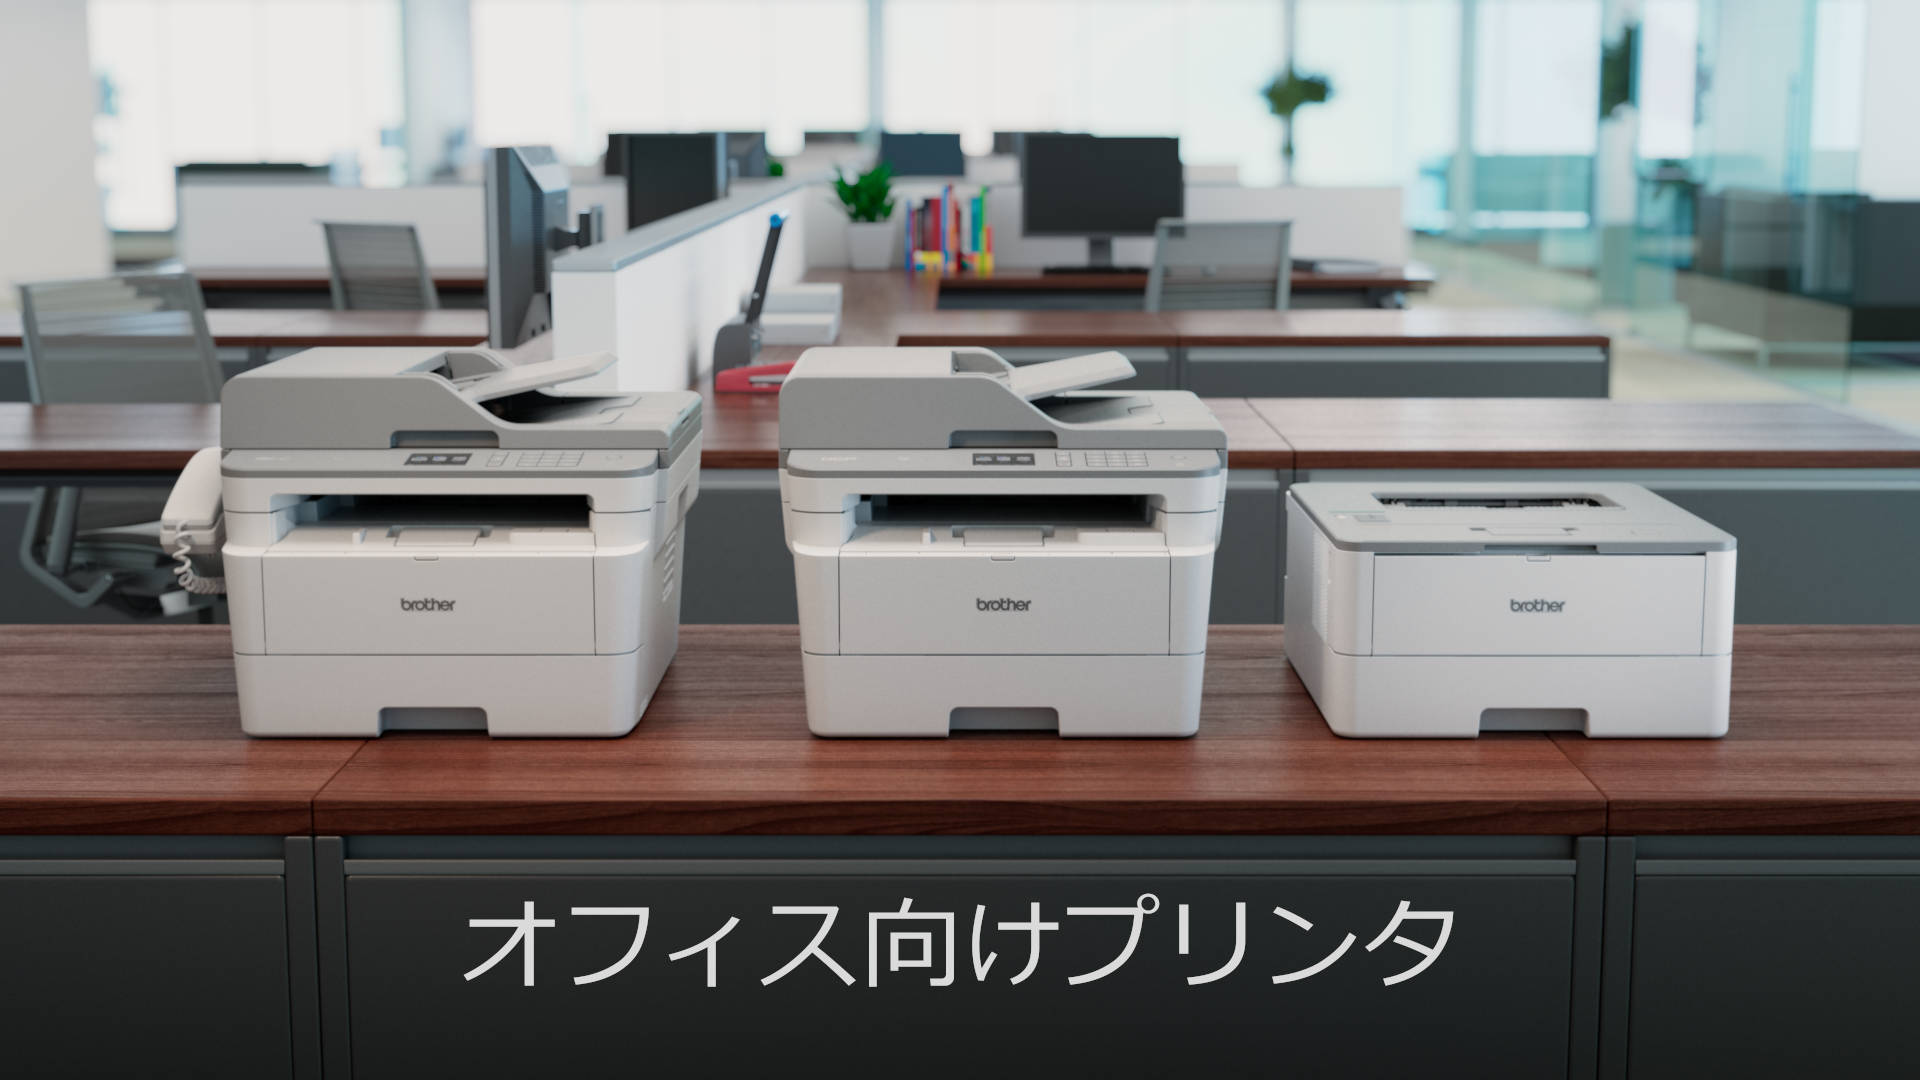 Série d’imprimantes Brother dans un bureau régional Japonais.